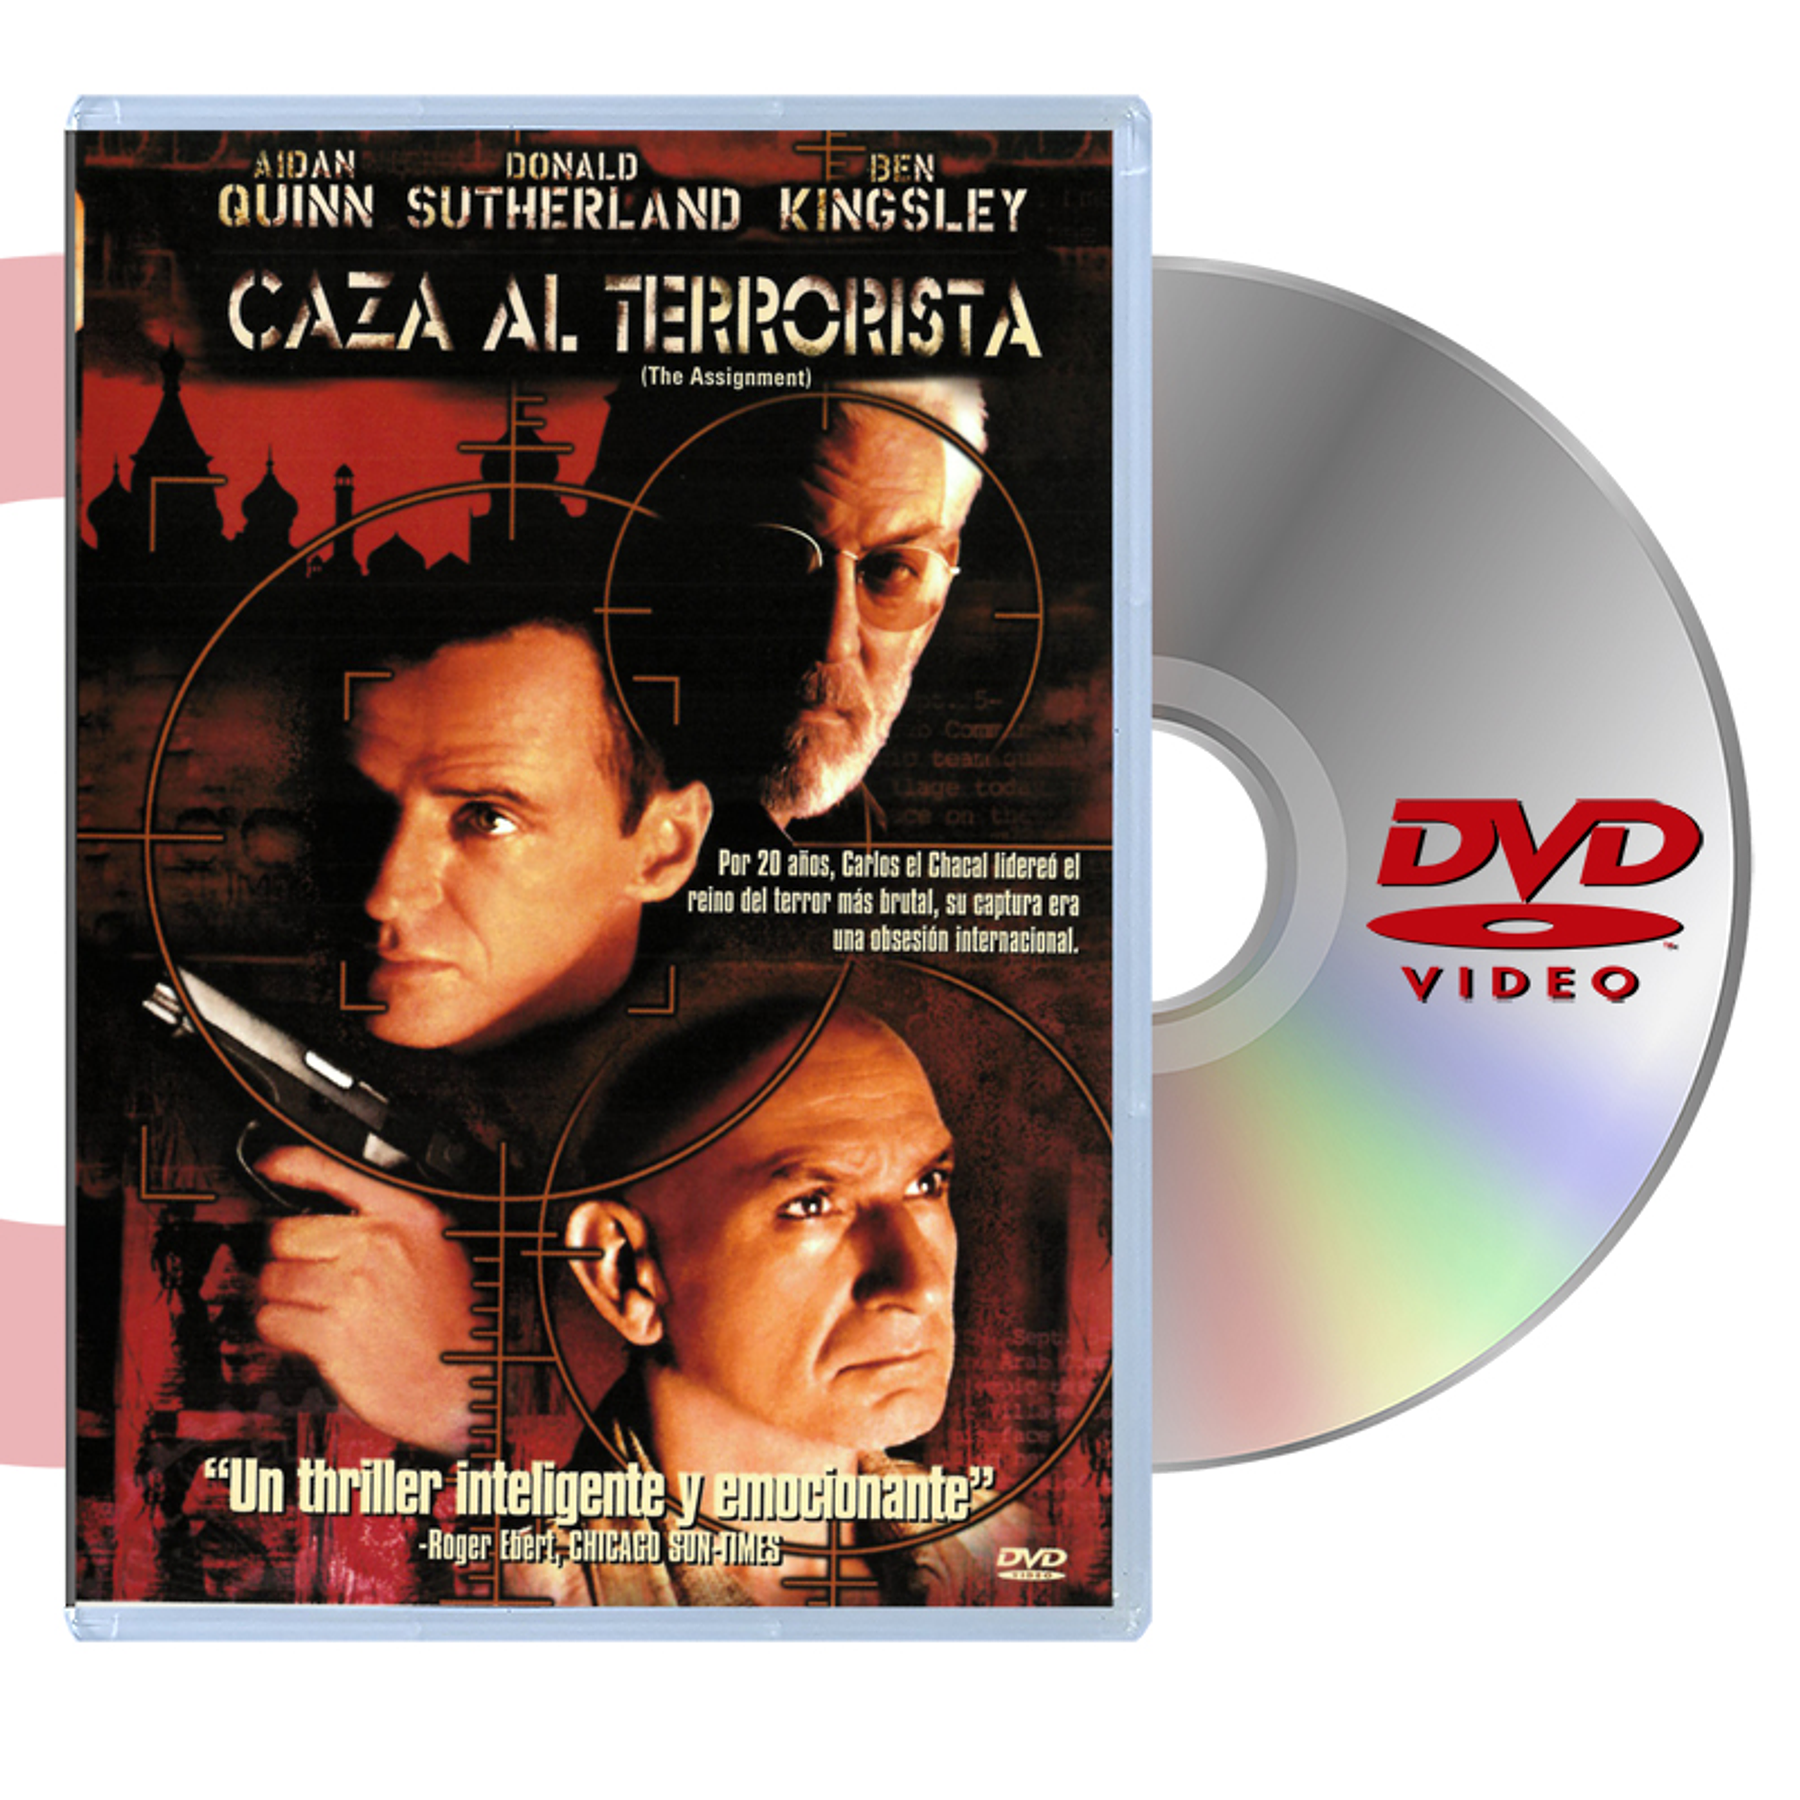 DVD CAZA AL TERRORISTA